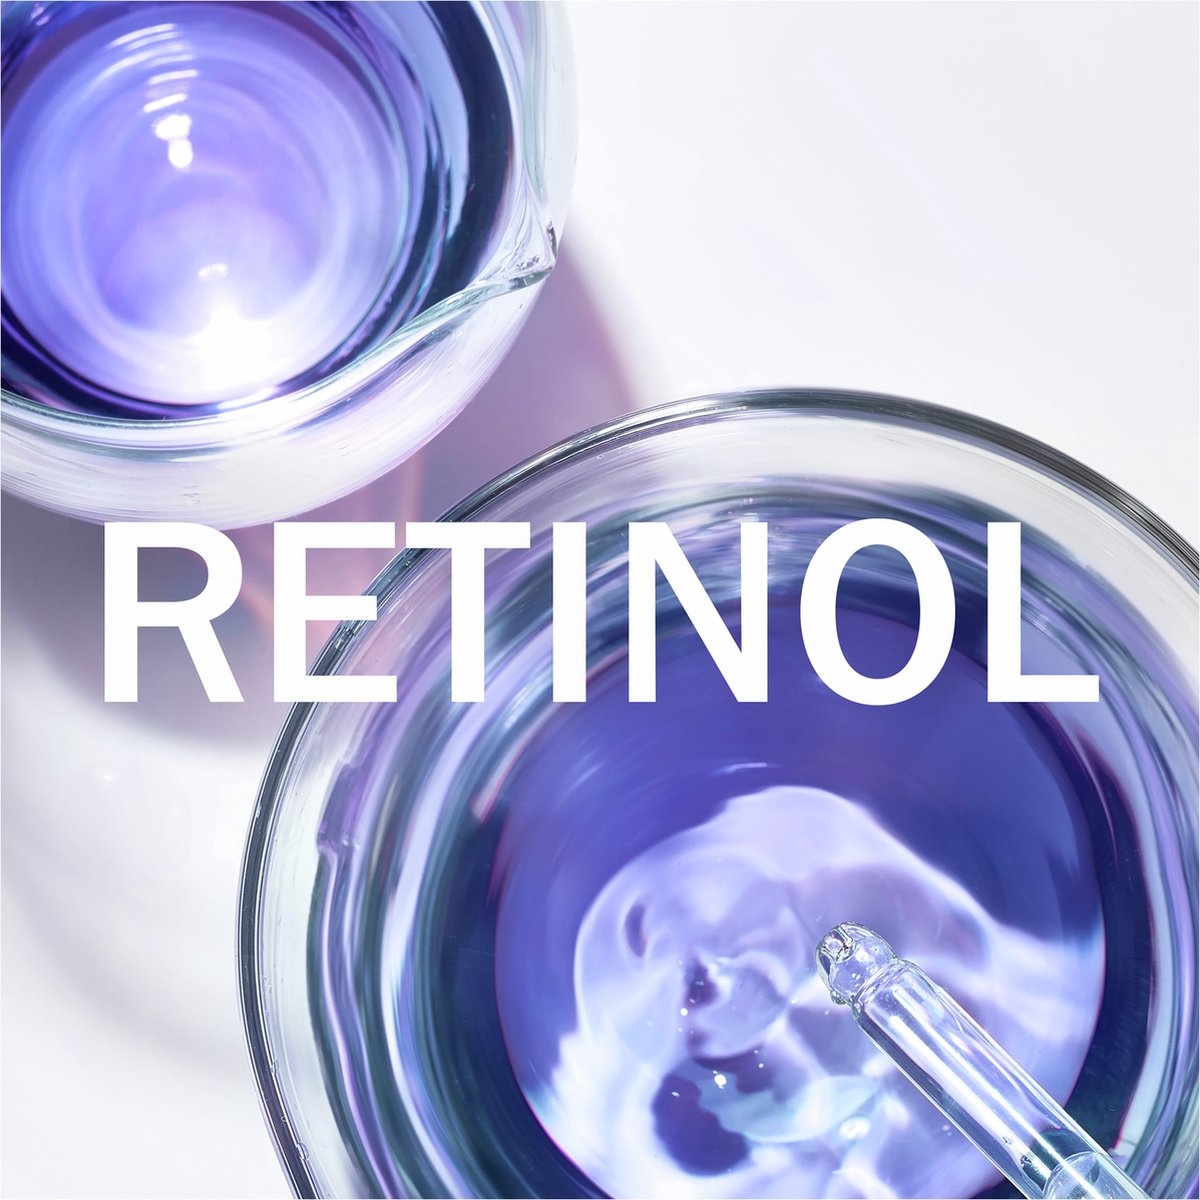 Olay Retinol24 - Nachtserum - Parfümfrei mit Retinol und Vitamin B3 - 40 ml - Verpackung beschädigt